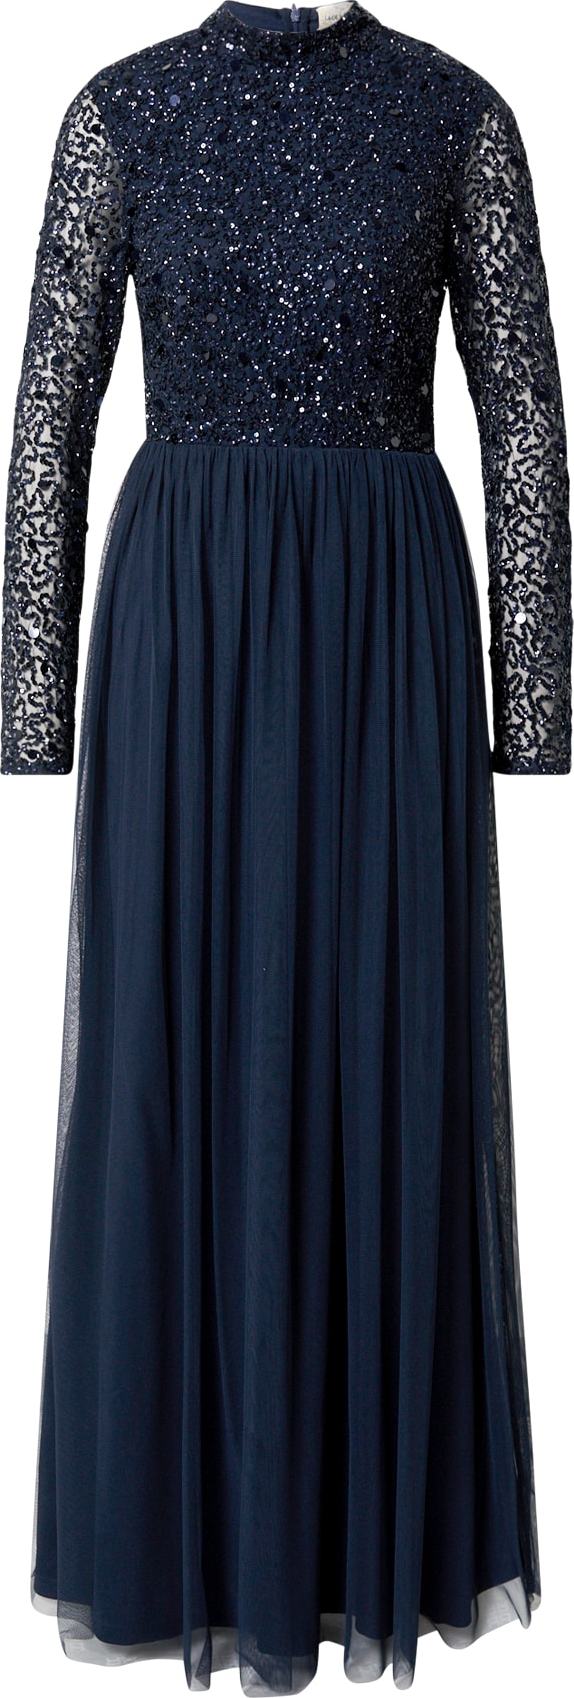 LACE & BEADS Společenské šaty 'Margeritta' tmavě modrá